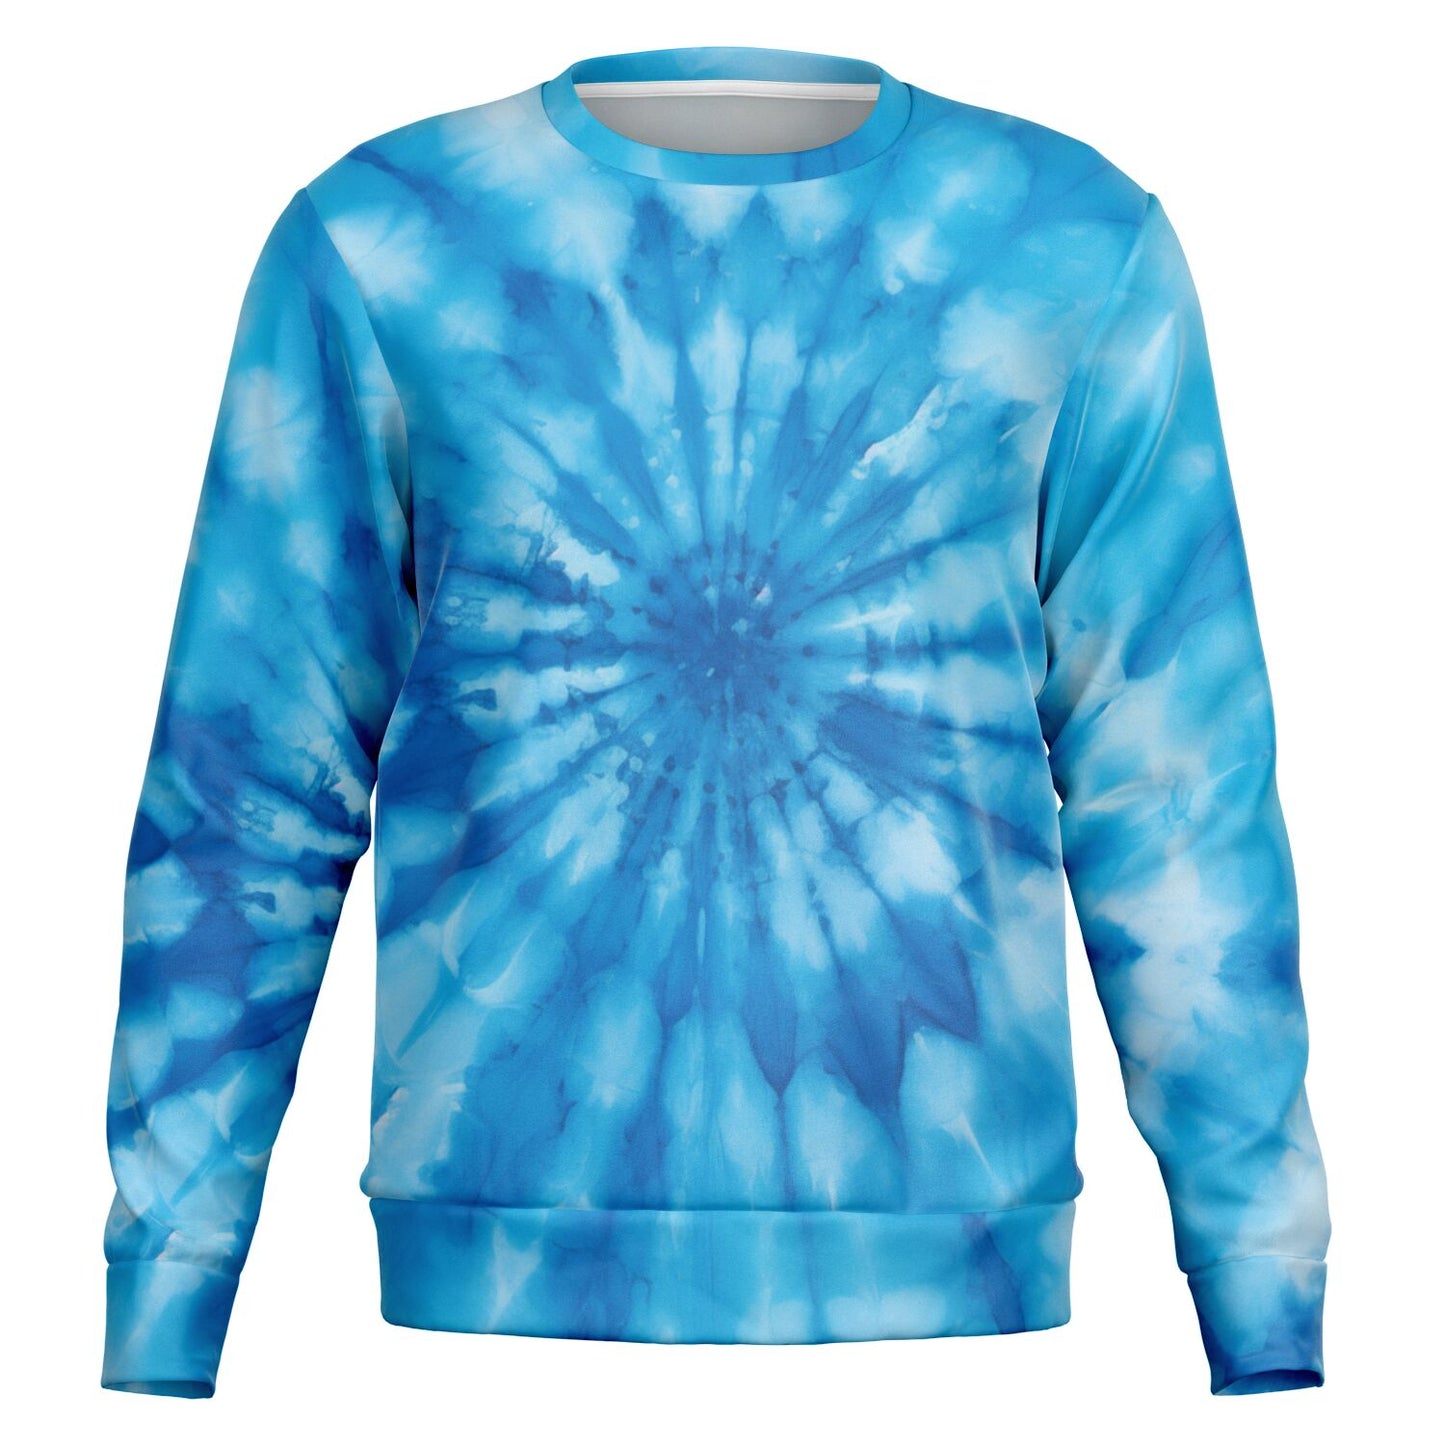 Blue Tie Dye Sweatshirt, Spiral Graphic Crewneck Fleece Cotton Sweater Jumper Pullover Men Women Adult Aesthetic Designer Top